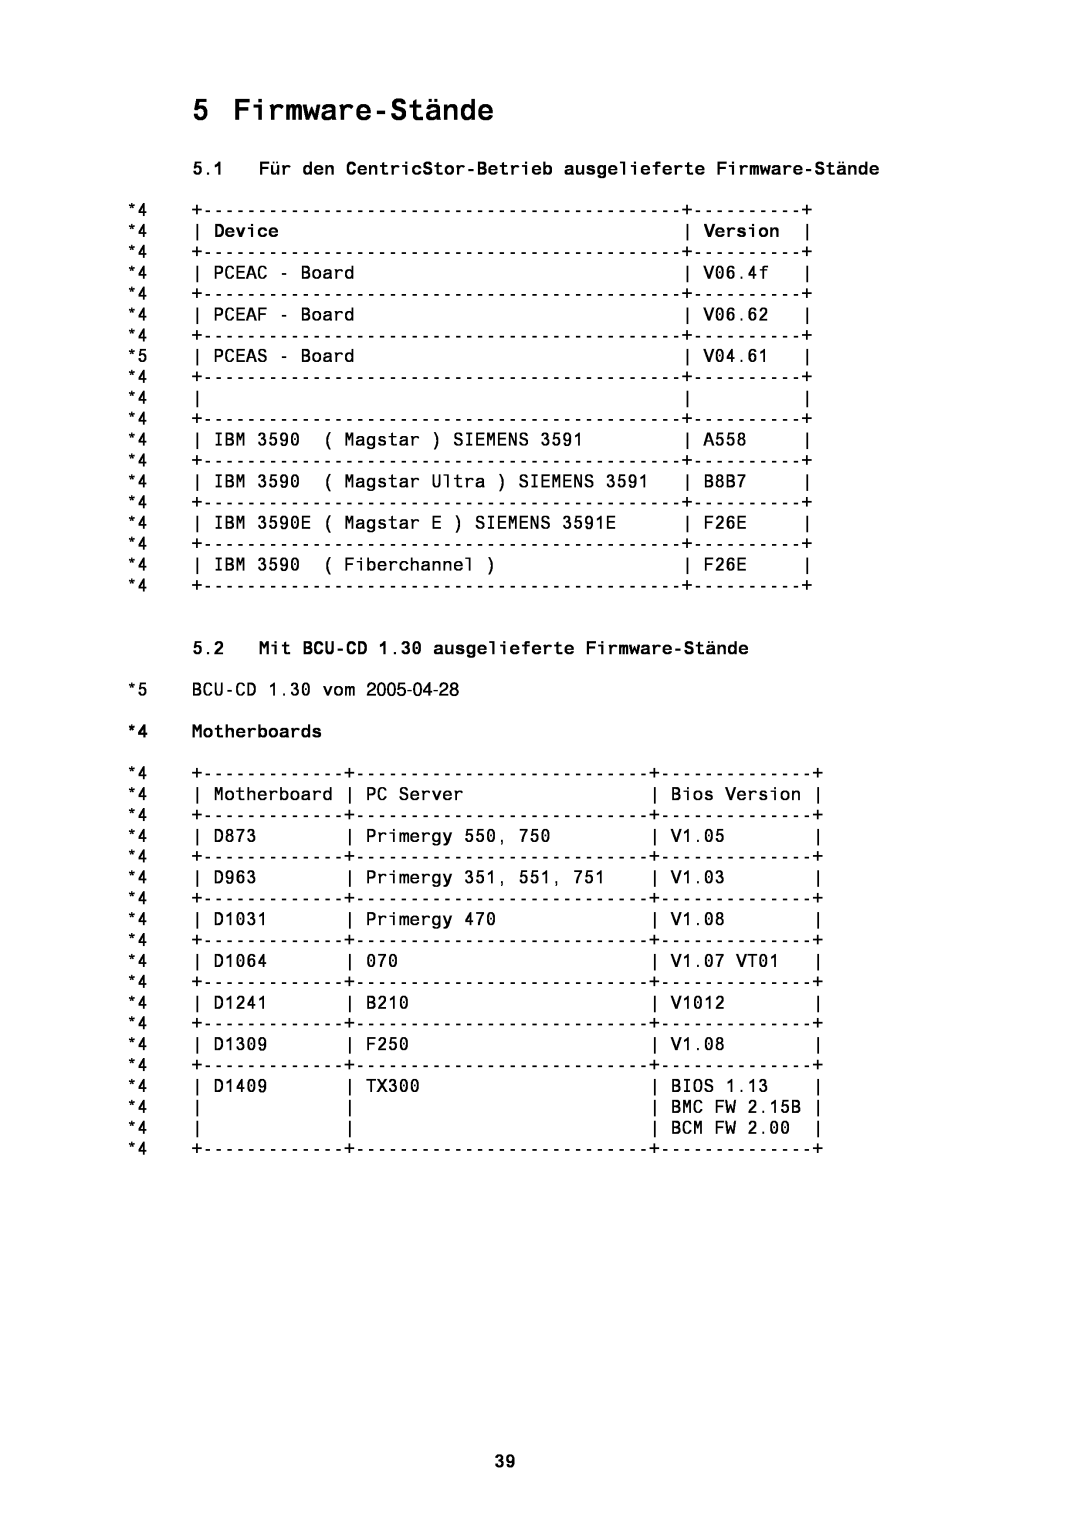 Fujitsu BS2000/OSD manual 5.1 Für den CentricStor-Betrieb ausgelieferte Firmware-Stände, Device, Version, Motherboards 